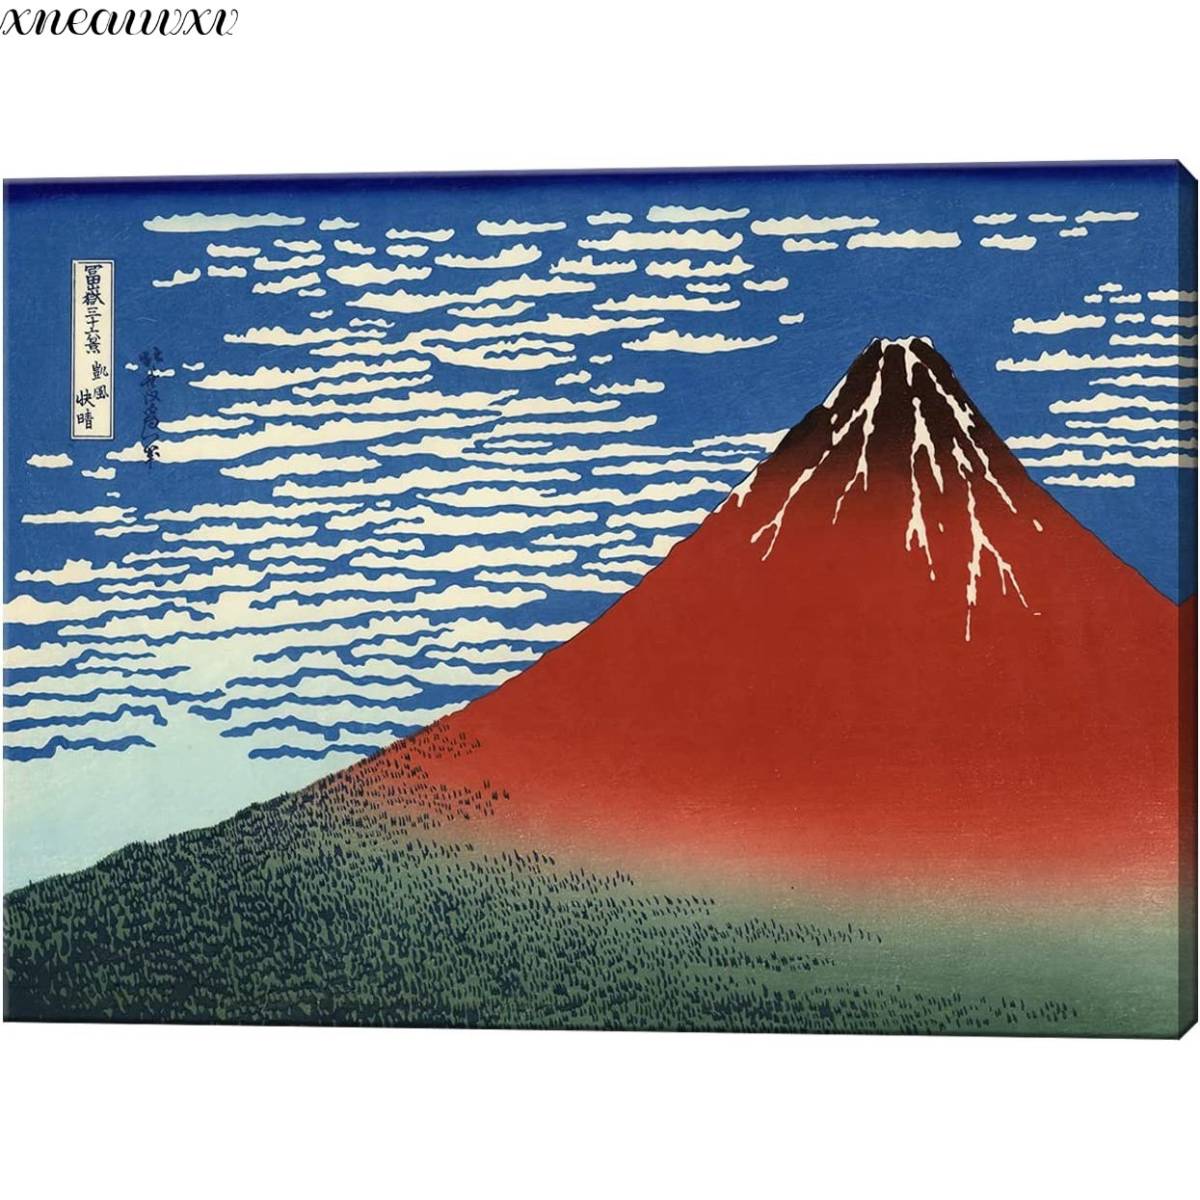 لوحة فنية كاتسوشيكا هوكوساي ستة وثلاثون منظرًا لجبل فوجي، رياح مشمسة صافية، استنساخ منظر مذهل، فن الزخرفة اليابانية، المناظر الطبيعية الكلاسيكية، لوحة البحر، الفن الداخلي, تلوين, أوكييو إي, مطبعة, صورة المكان الشهير